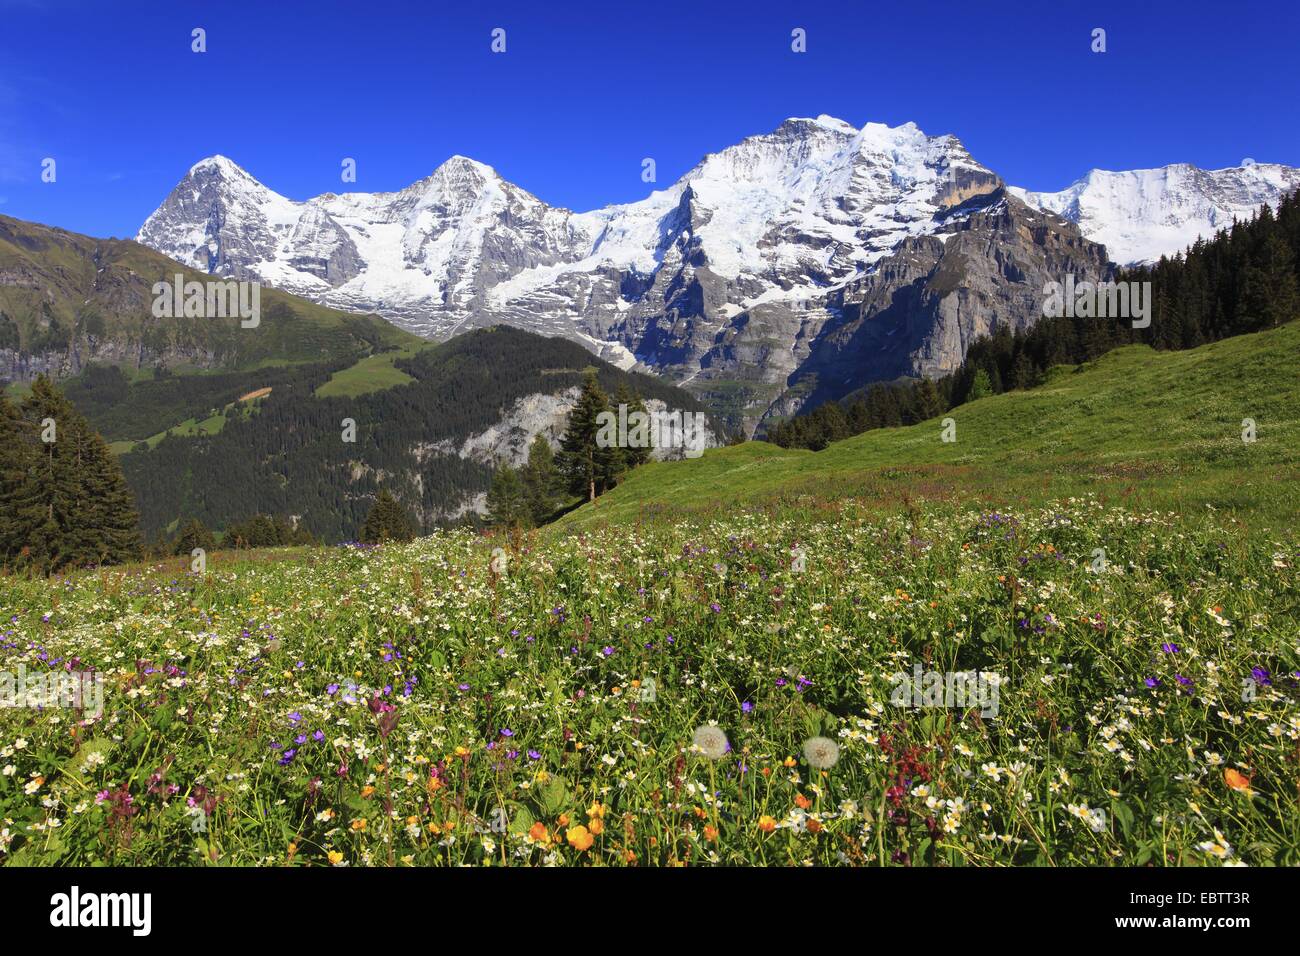 Vue depuis un pâturage à une montagne, avec l'Eiger (3970 m), Moench (4107 m) et la Jungfrau (4158 m), Suisse, Berne, Oberland Bernois Banque D'Images